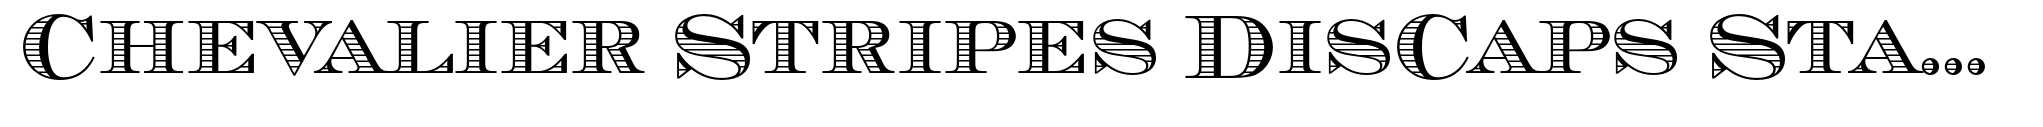 Chevalier Stripes DisCaps Standard (D) image